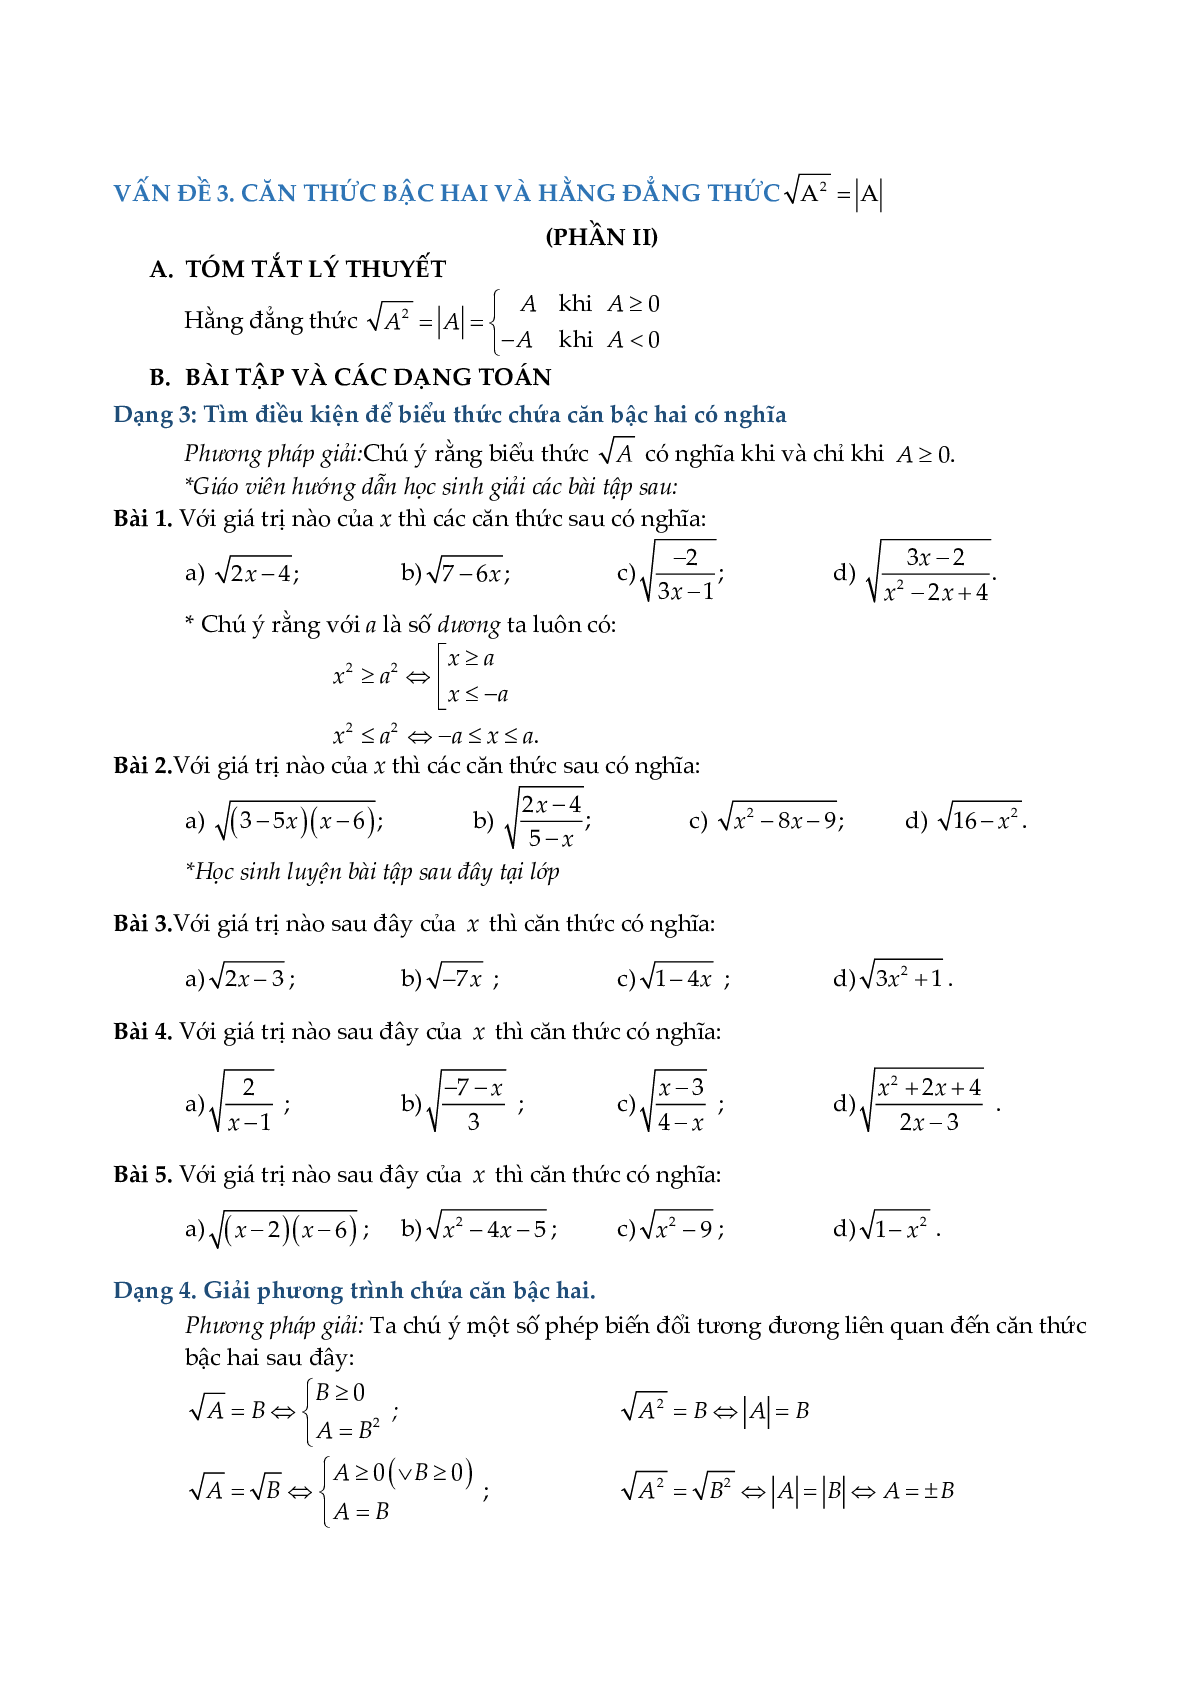 Chuyên đề rút gọn biểu thức và bài toán liên quan (trang 10)